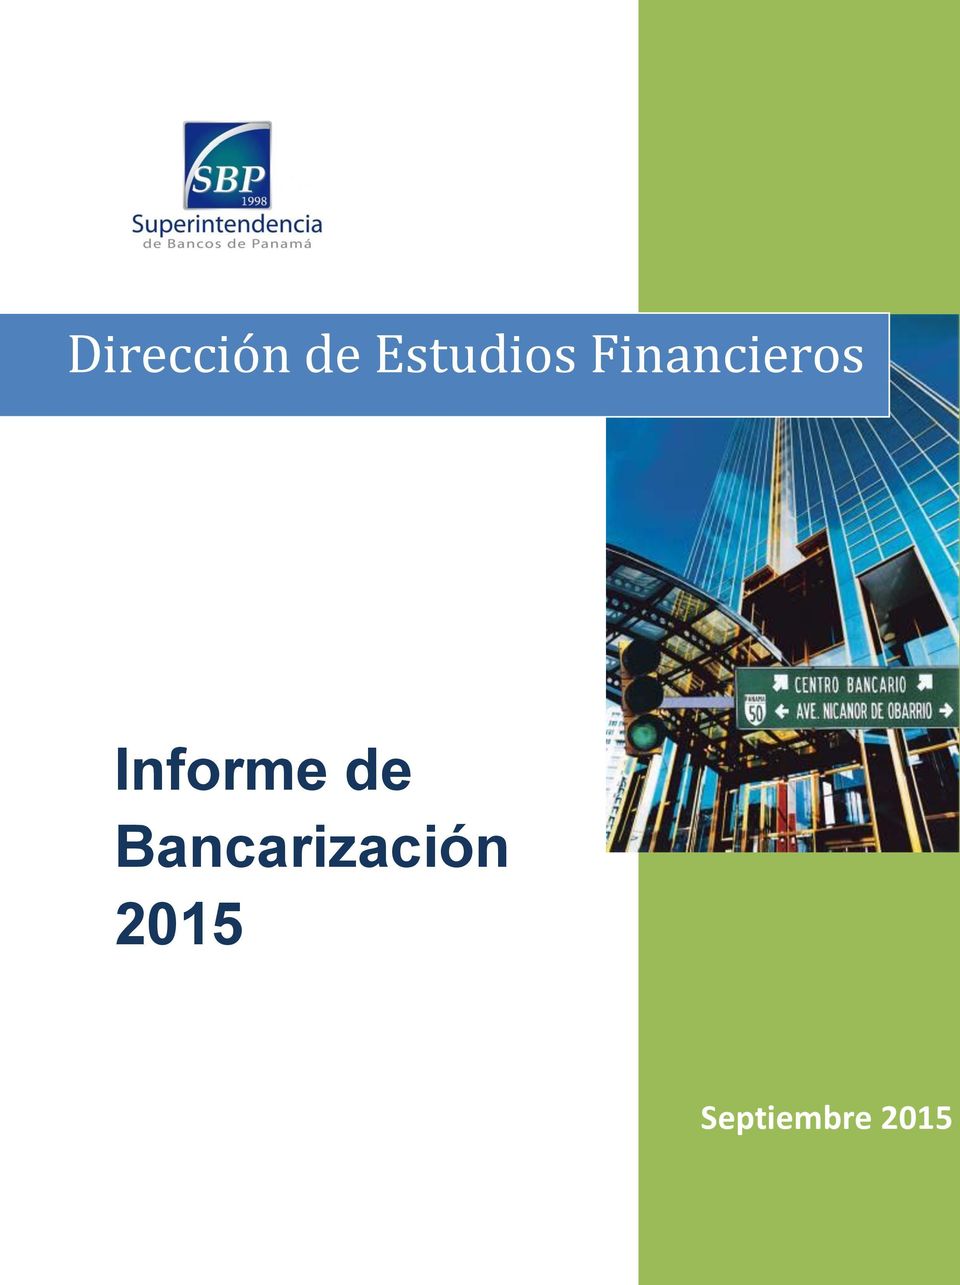 Financieros Informe